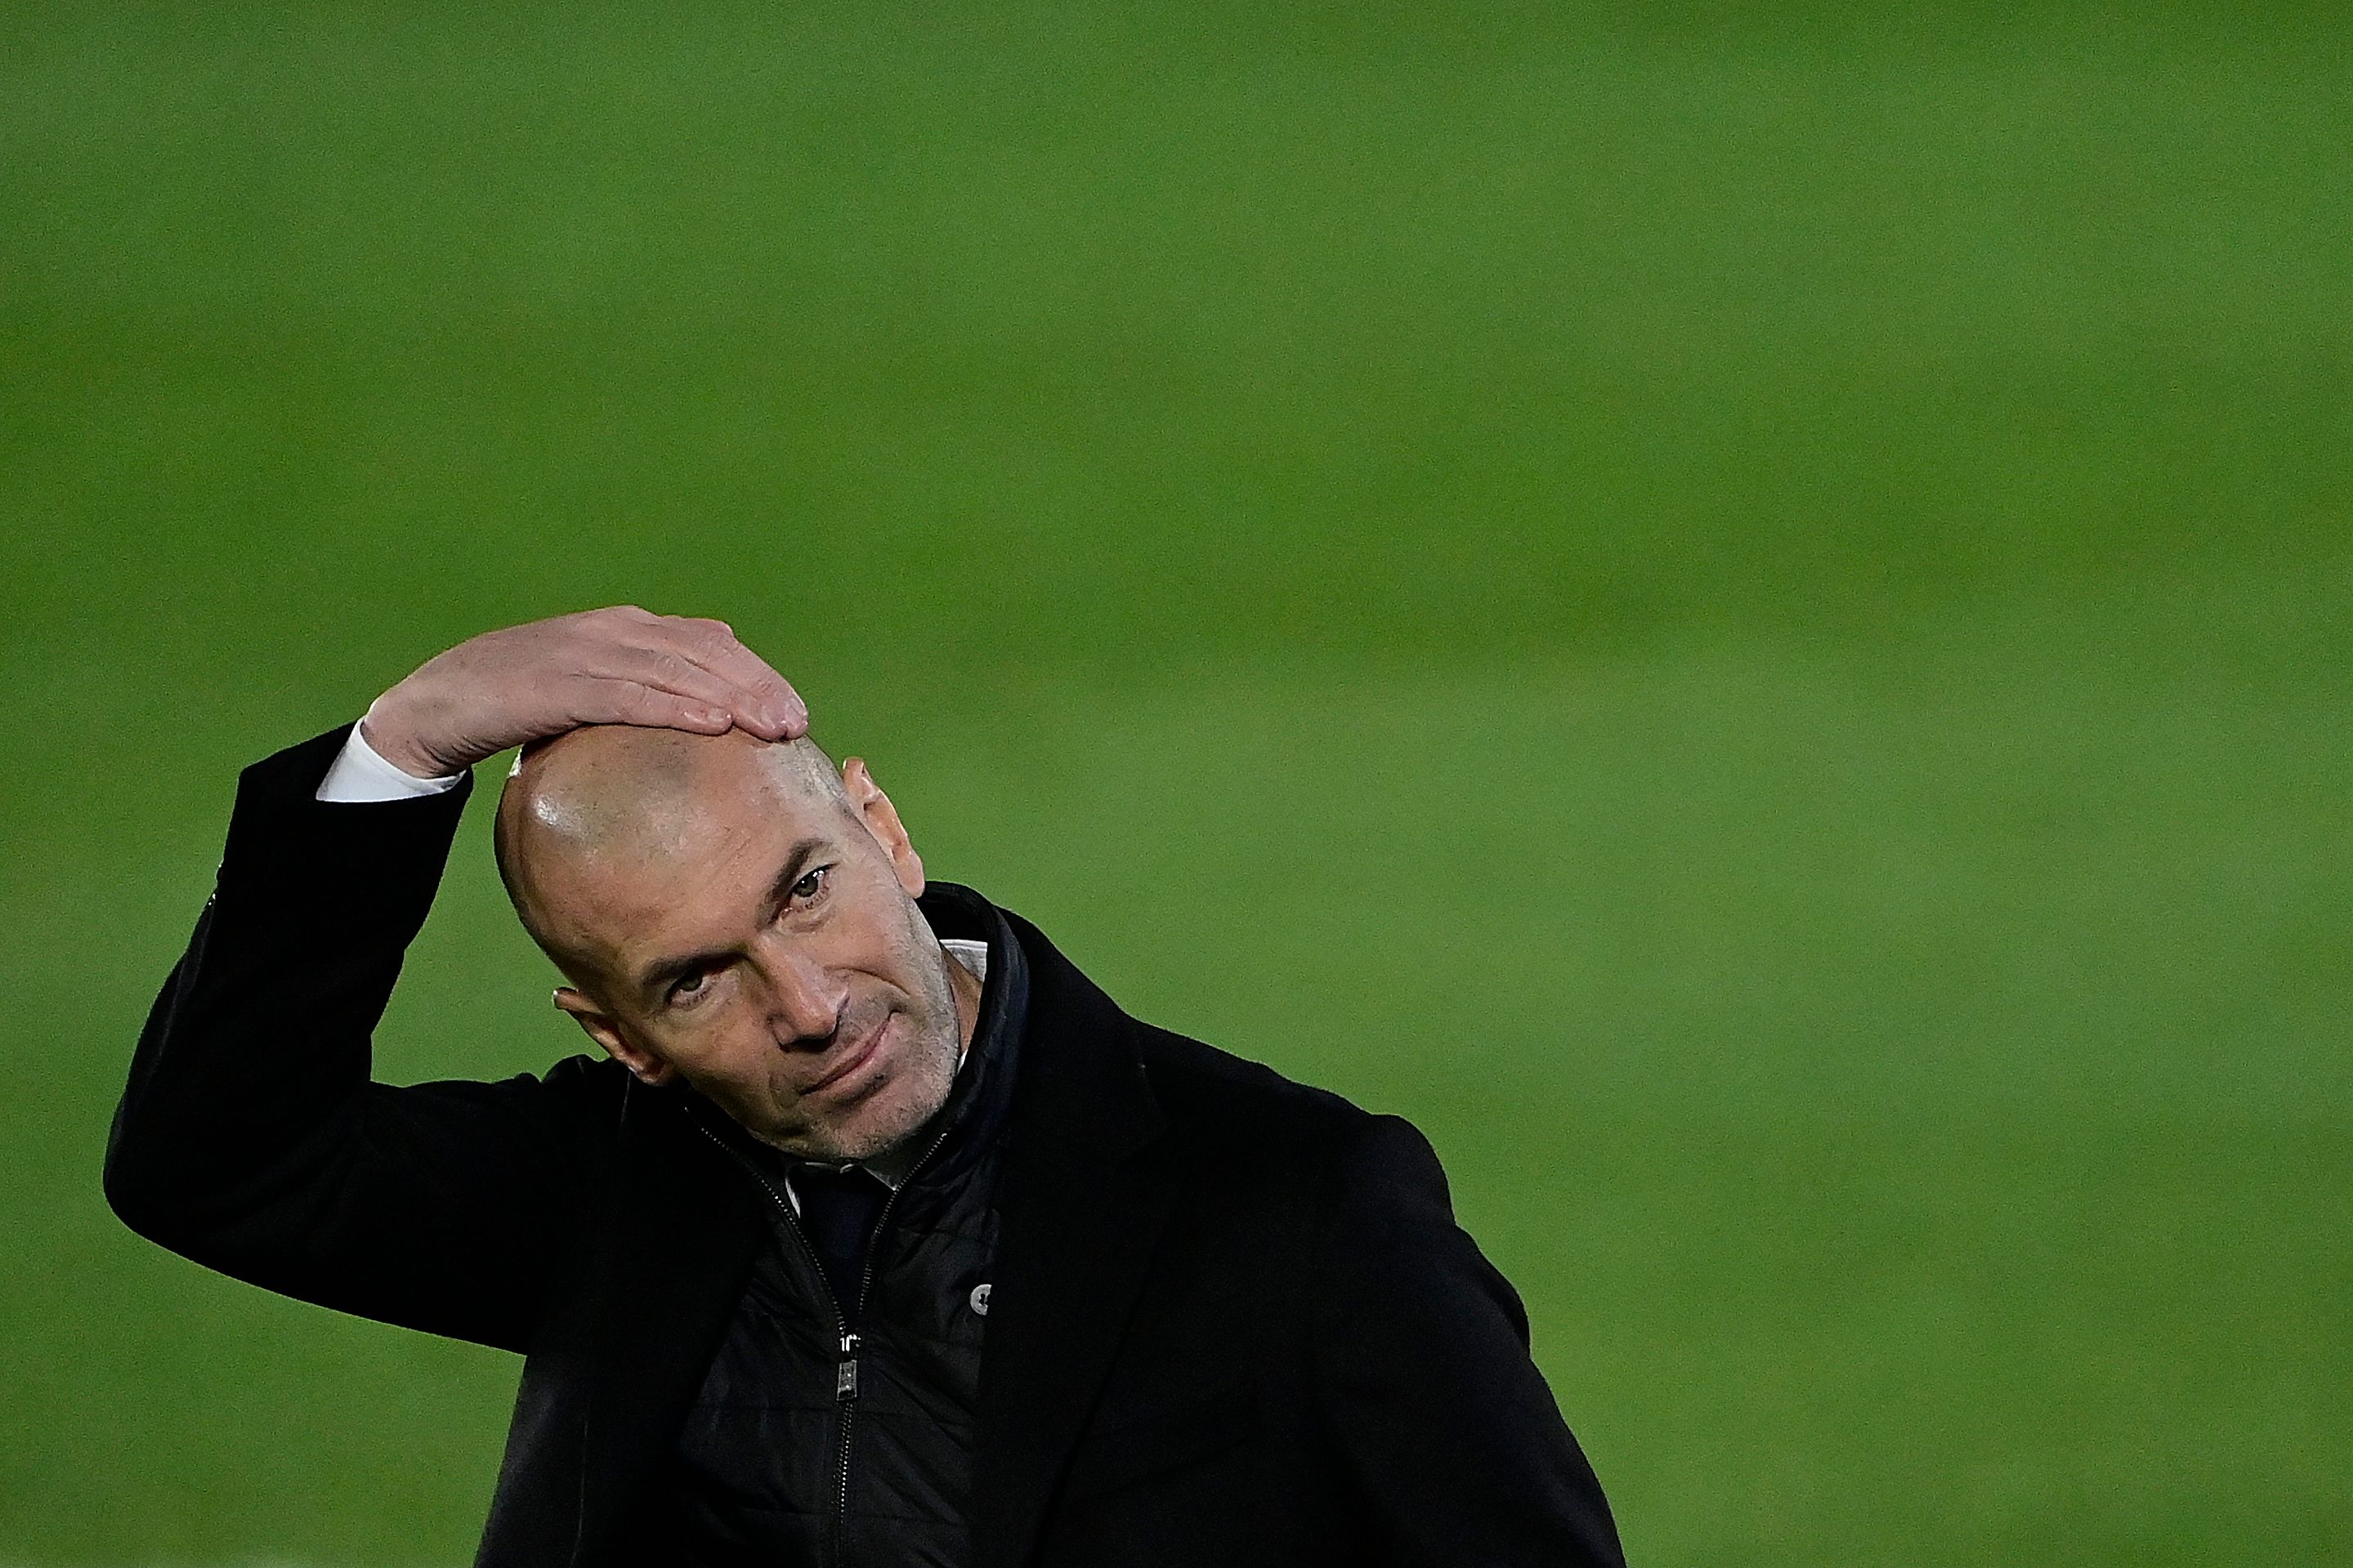 Zinedine Zidane, durante el partido entre Real Madrid CF y Real Sociedad. (Foto Prensa Libre: AFP)